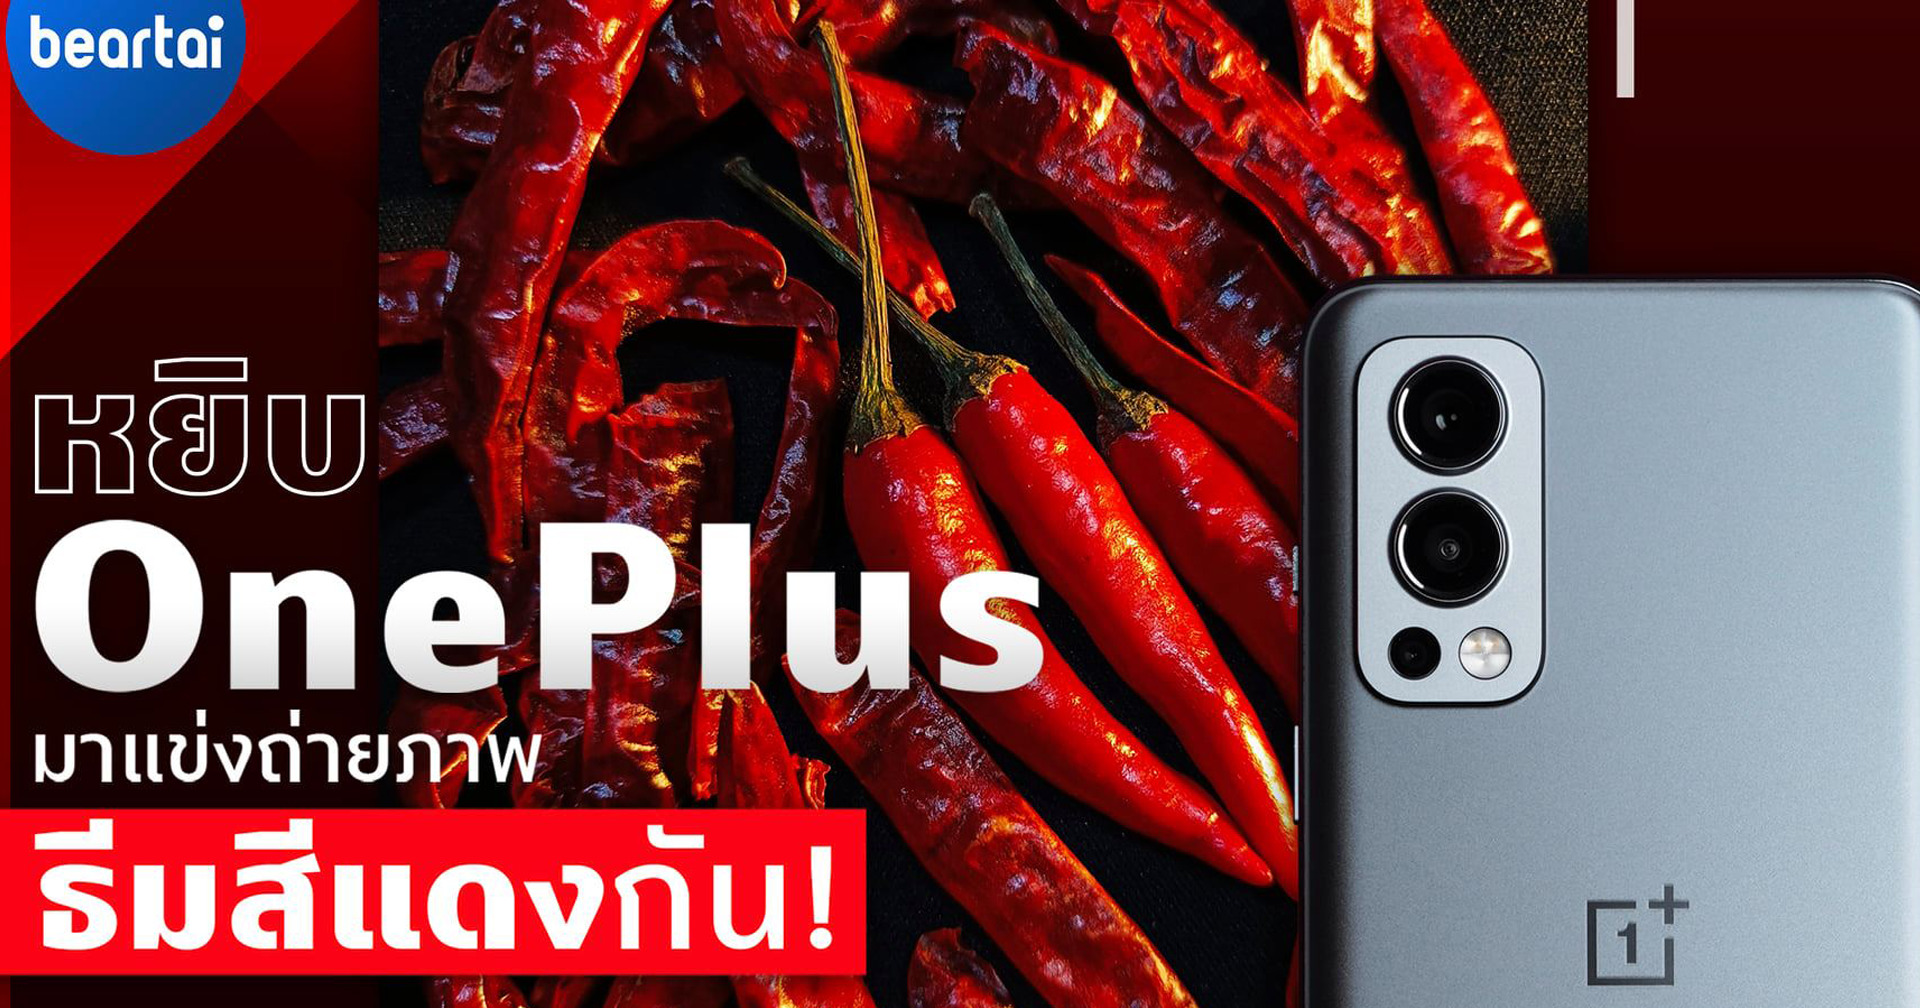 แคมเปญถ่ายรูปชิงรางวัลกับ #OnePlus กลับมาอีกครั้ง!